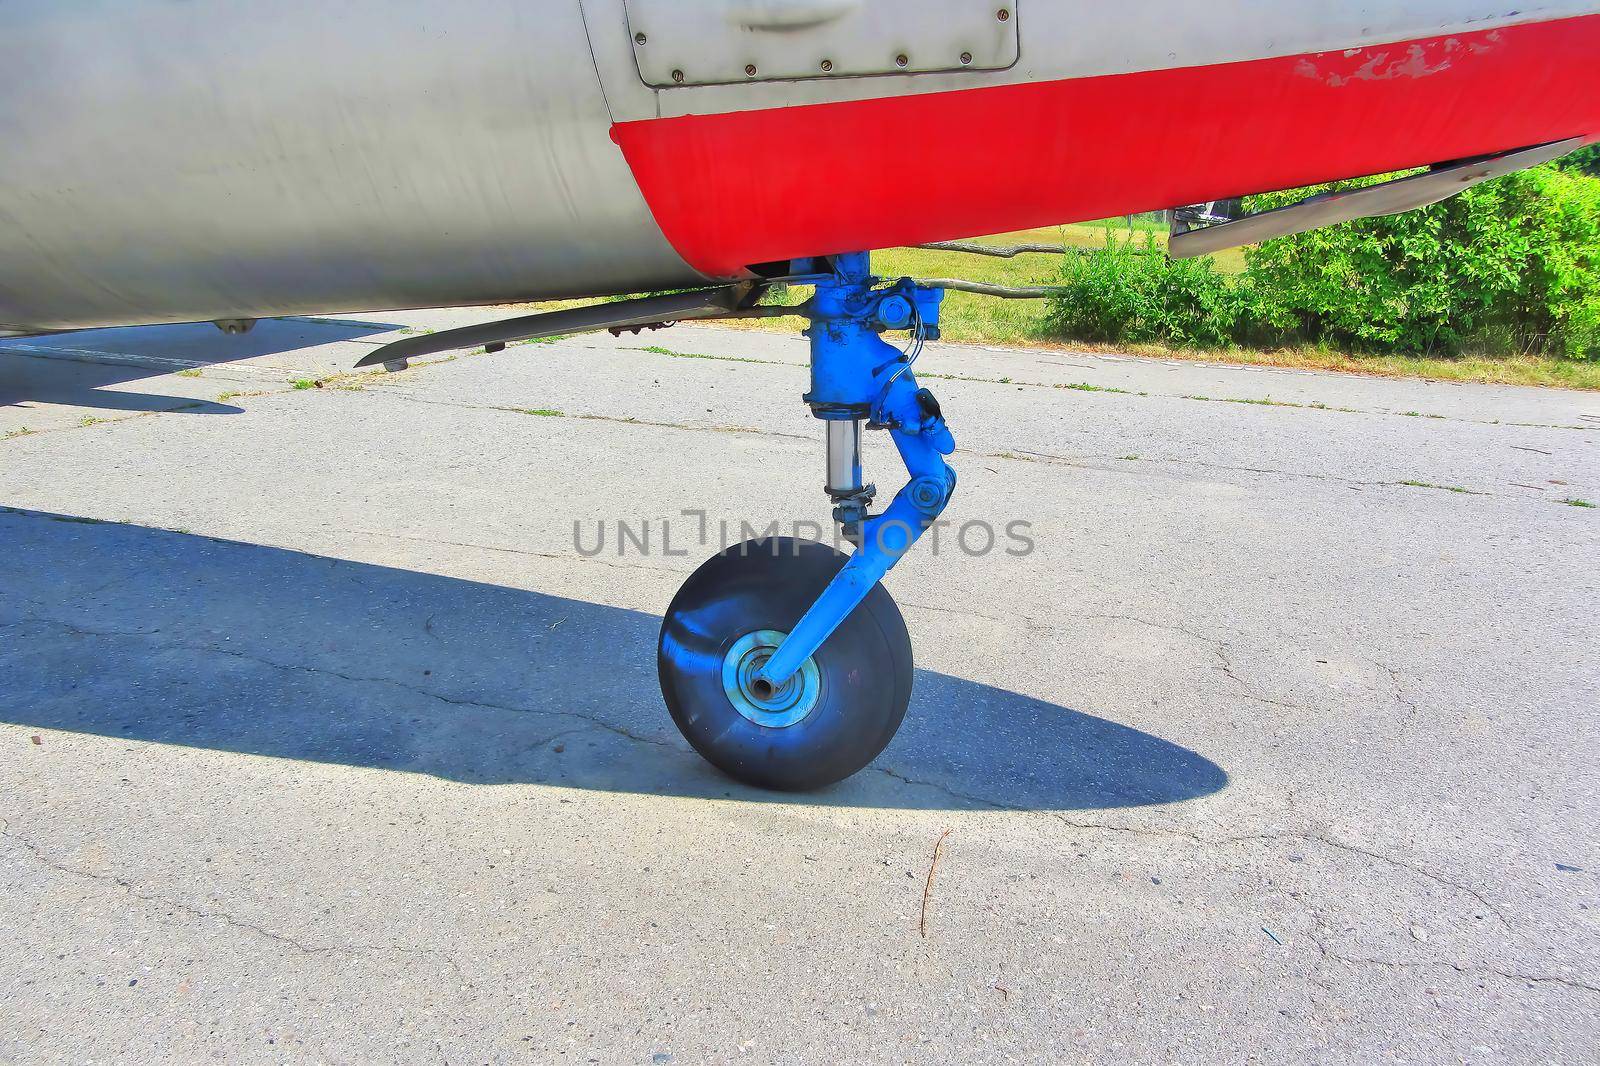 Wheels rubber tire rear landing gear racks, L-29 Delfin on image